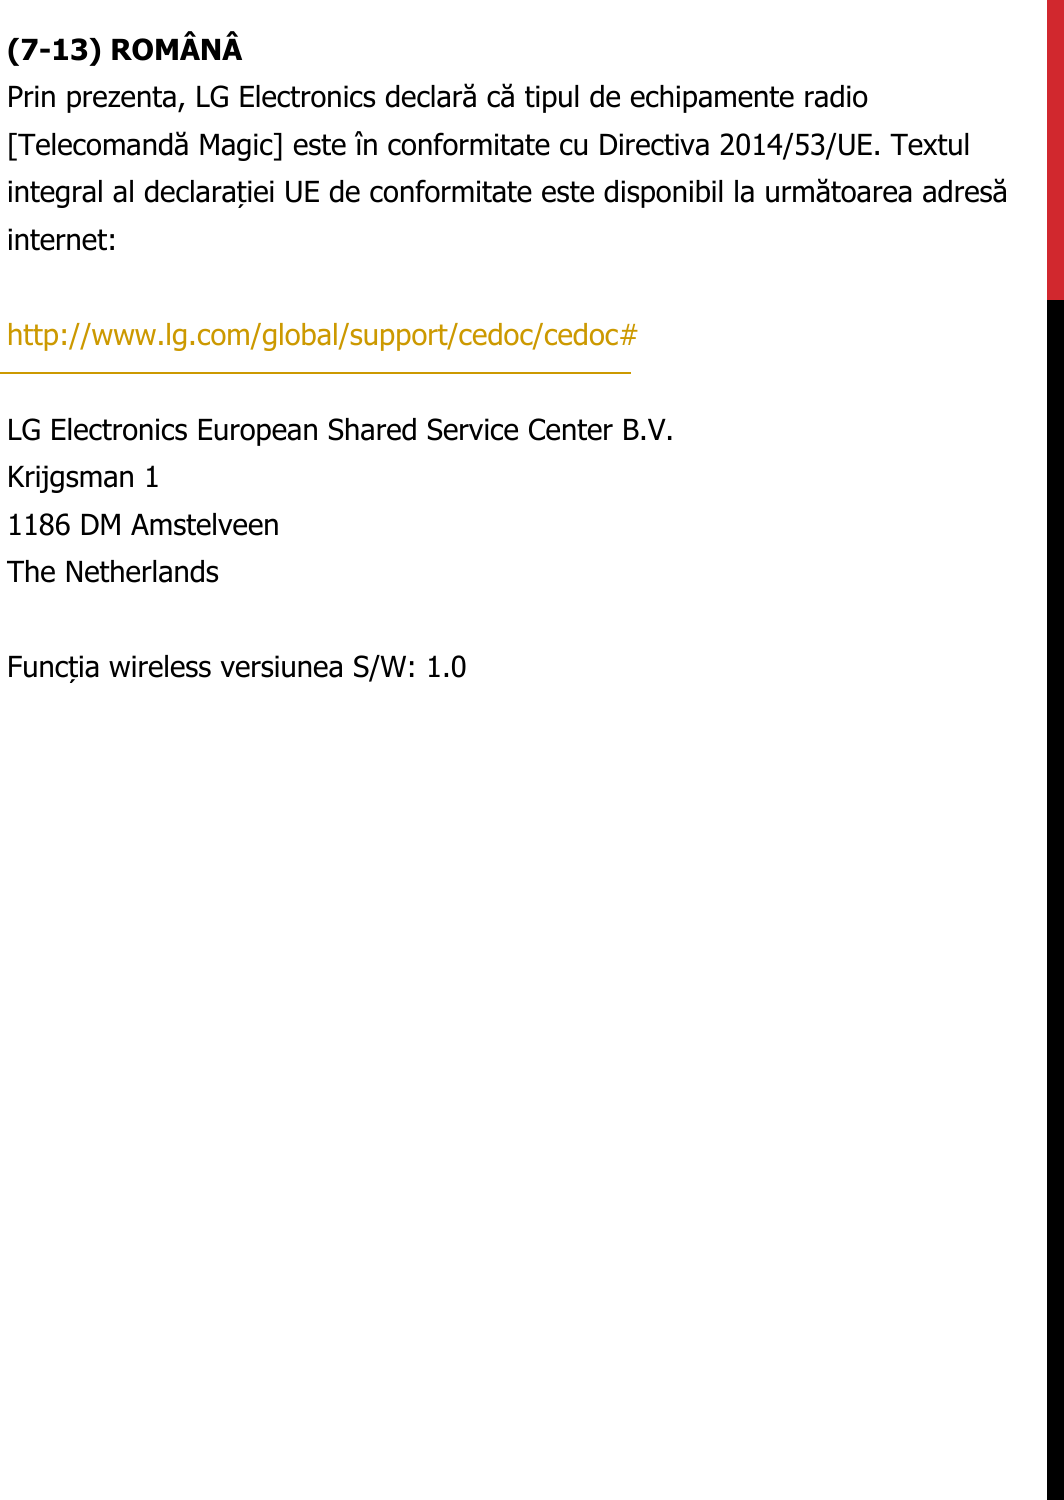 (7-13) ROMÂNÂPrin prezenta, LG Electronics declară că tipul de echipamente radio  [Telecomandă Magic] este în conformitate cu Directiva 2014/53/UE. Textul  integral al declarației UE de conformitate este disponibil la următoarea adresă  internet:   http://www.lg.com/global/support/cedoc/cedoc#   LG Electronics European Shared Service Center B.V.  Krijgsman 1  1186 DM Amstelveen  The Netherlands   Funcția wireless versiunea S/W: 1.0